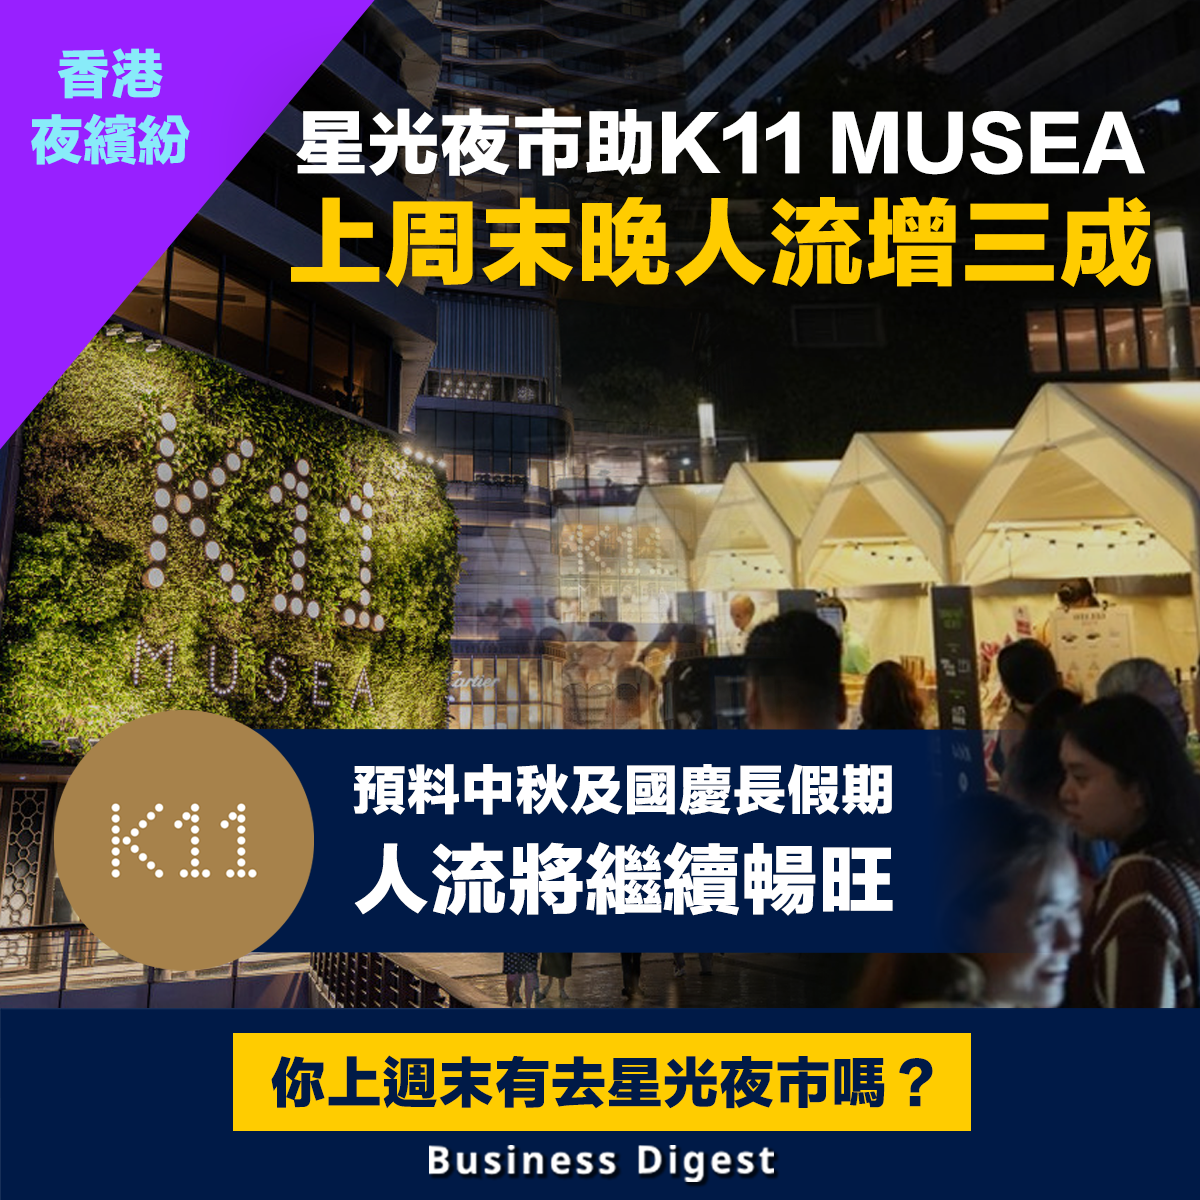 【香港夜繽紛】星光夜市助K11 MUSEA上週末晚人流增三成